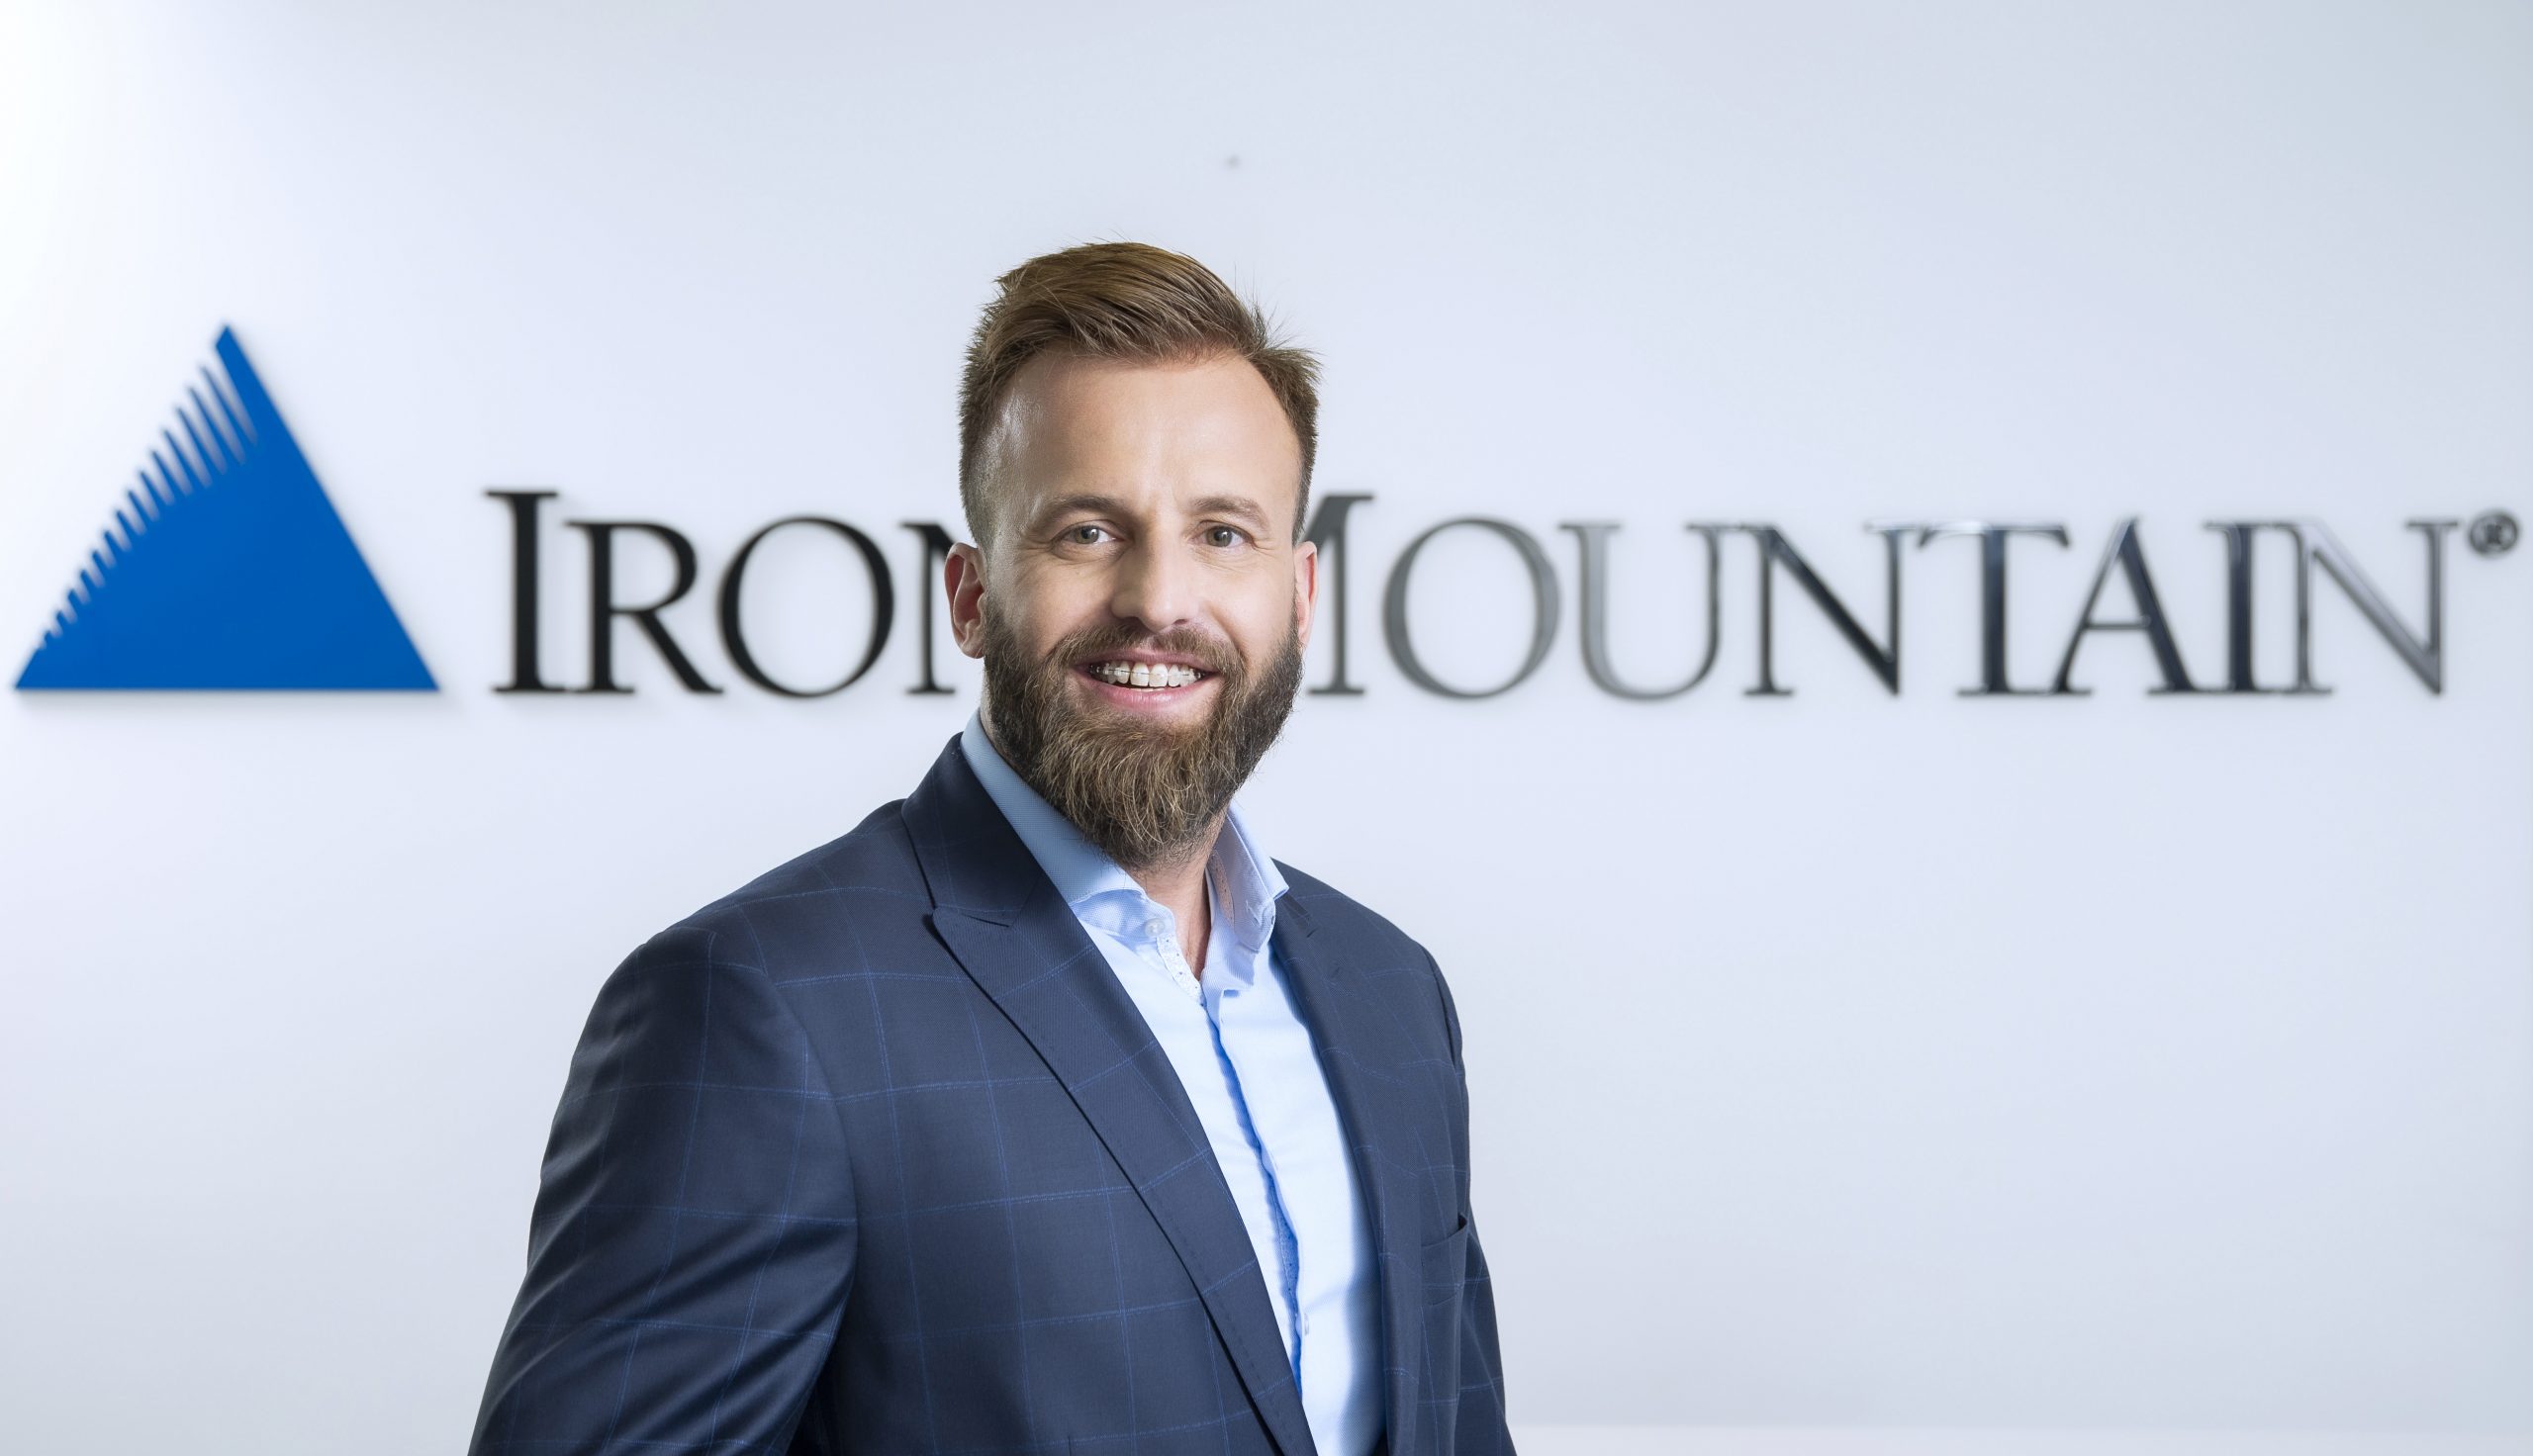 Marcin Mandryk z awansem w globalnych strukturach Iron Mountain. Objął stanowisko Head of Sales Operations Europe & South Africa